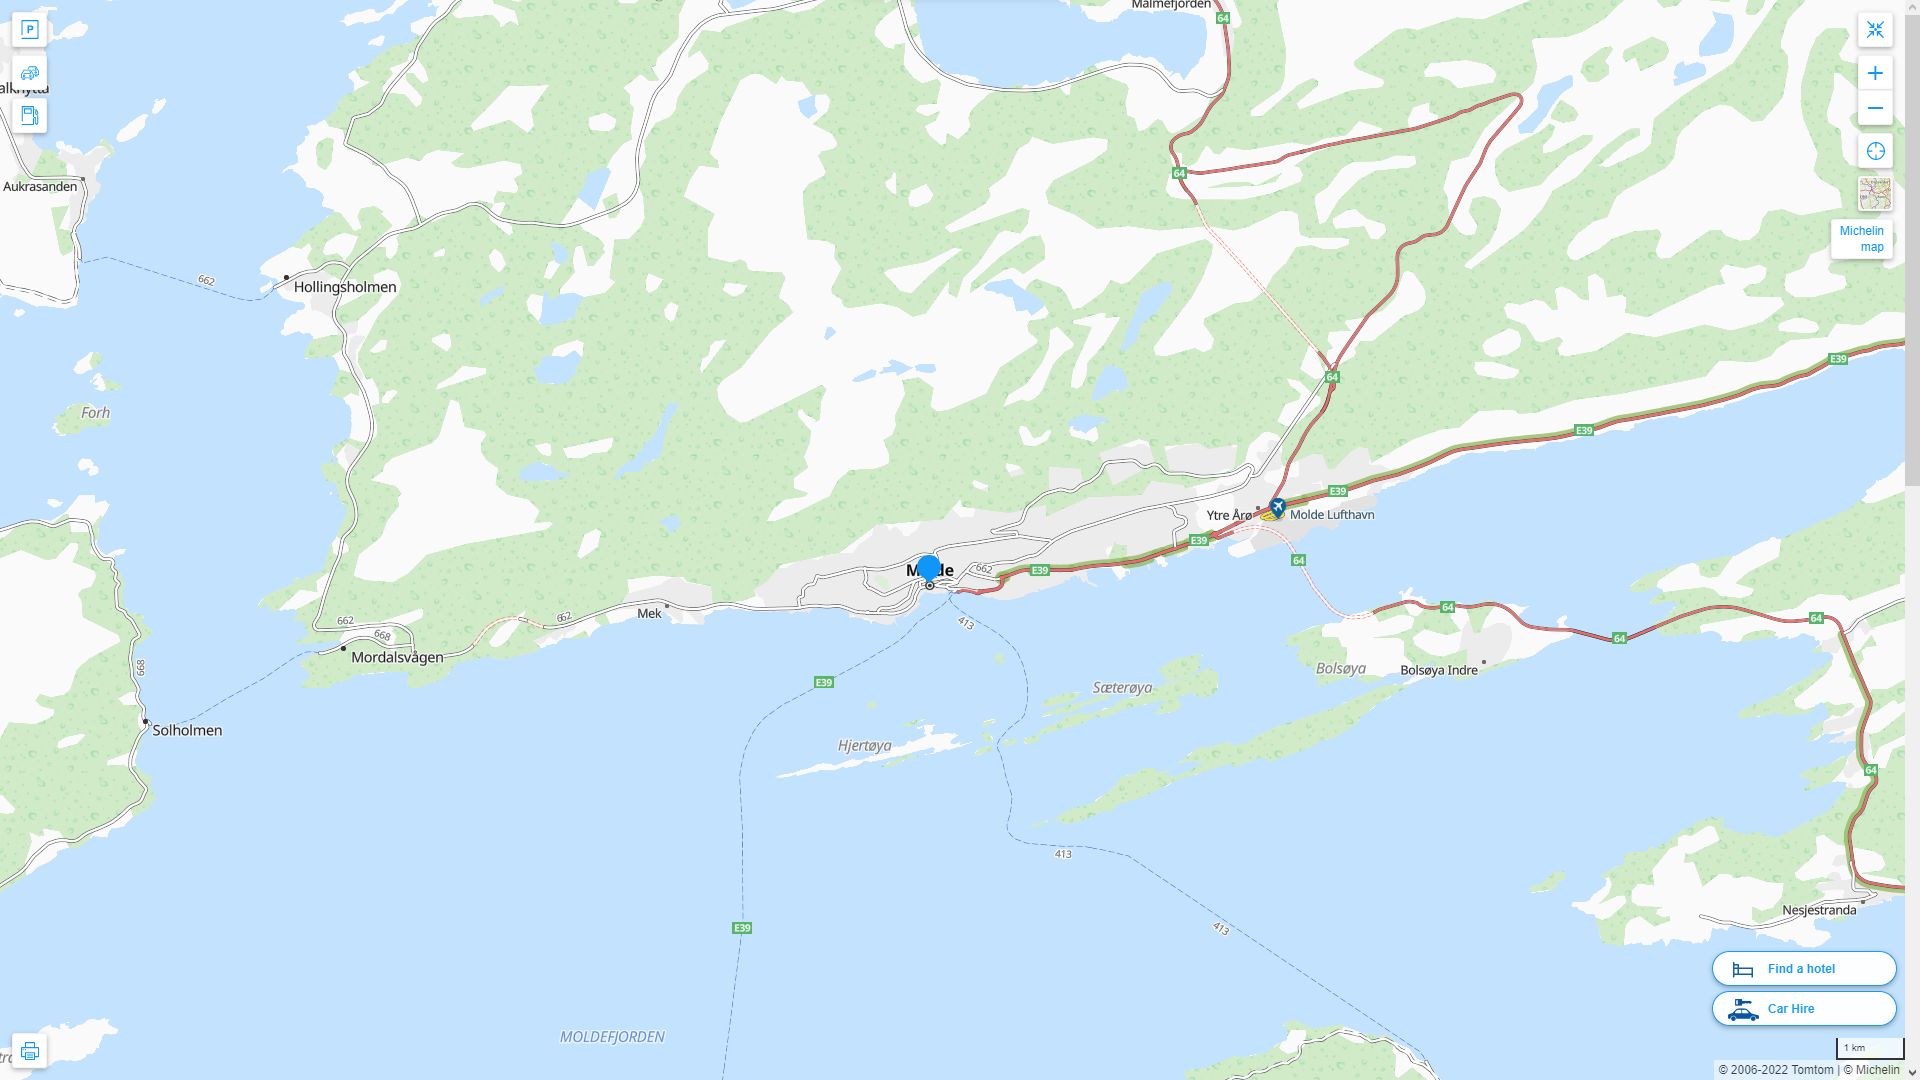 Molde Norvege Autoroute et carte routiere